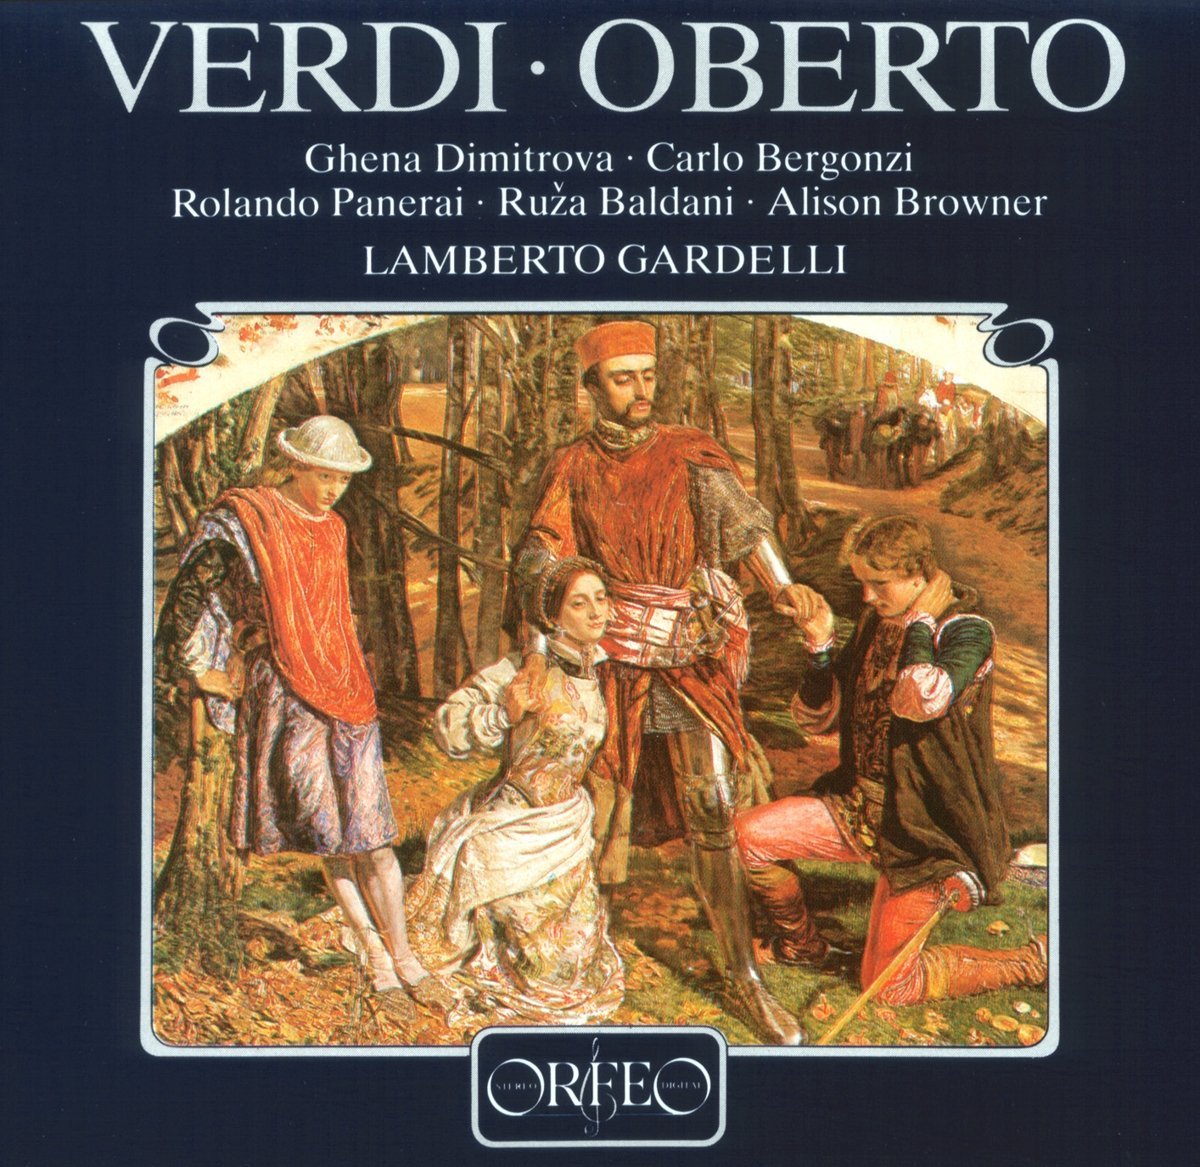 Audio Cd Giuseppe Verdi - Oberto NUOVO SIGILLATO, EDIZIONE DEL 02/12/1987 SUBITO DISPONIBILE